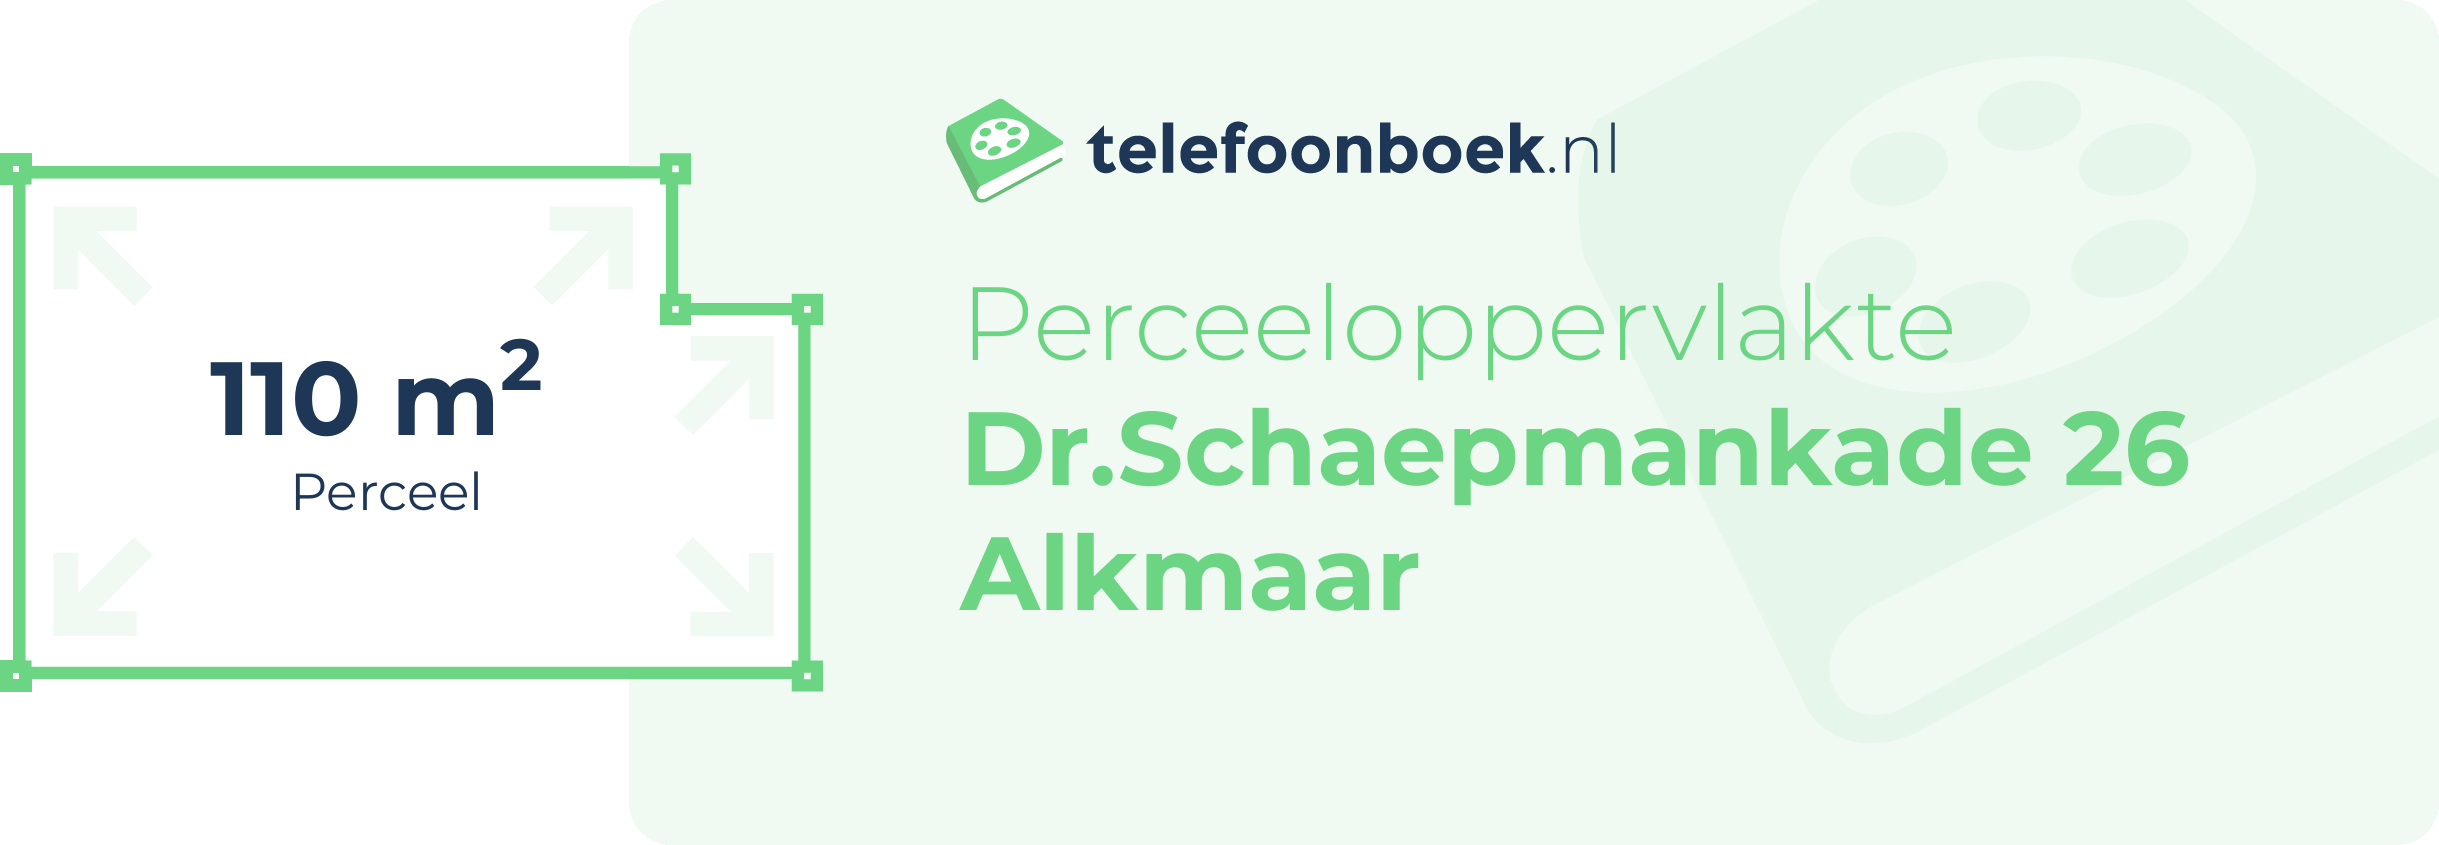 Perceeloppervlakte Dr.Schaepmankade 26 Alkmaar